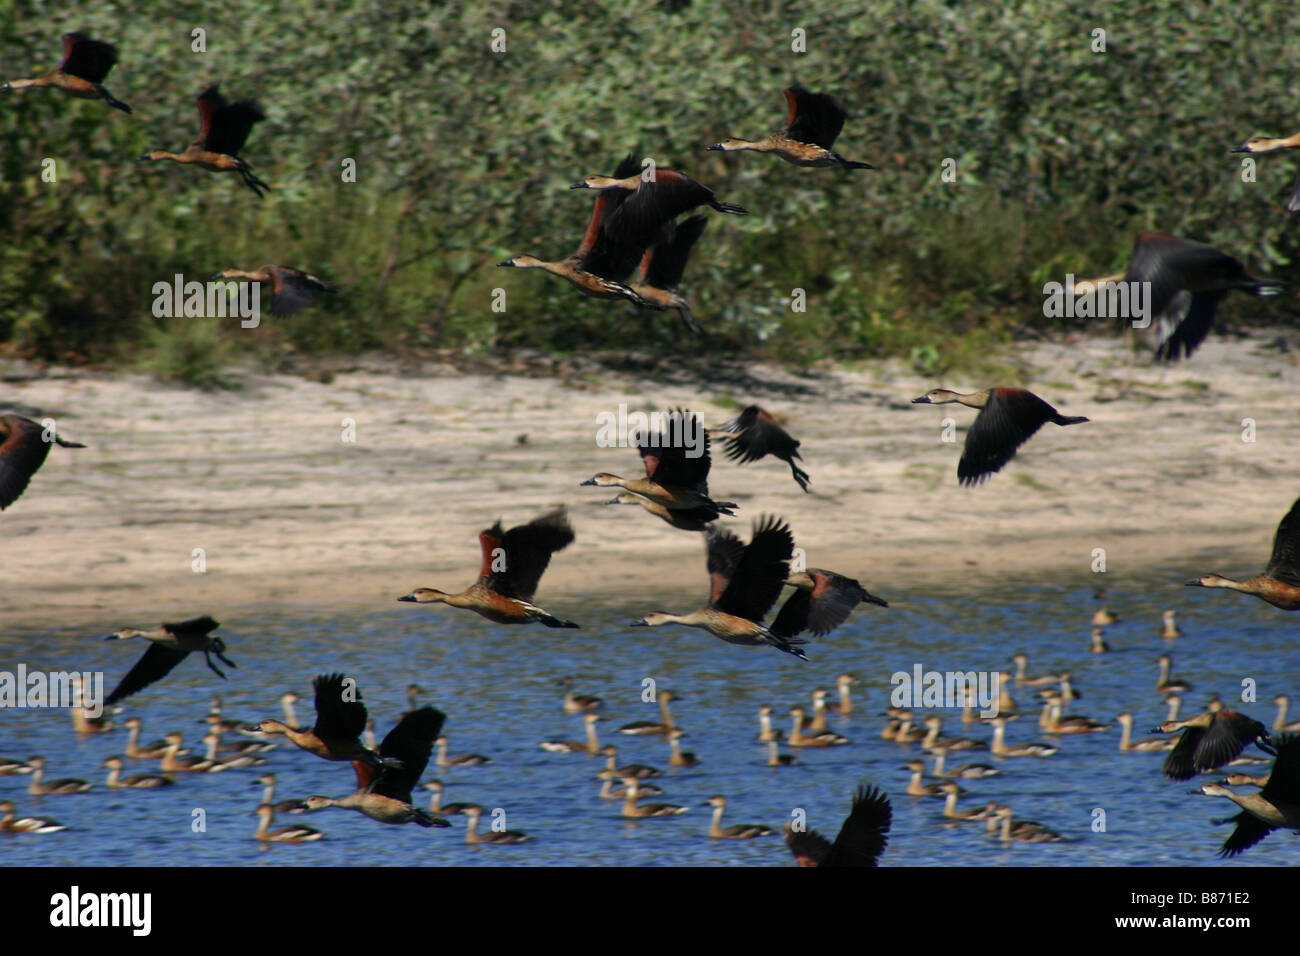 Plumed Whistling Ducks in flight Stock Photo